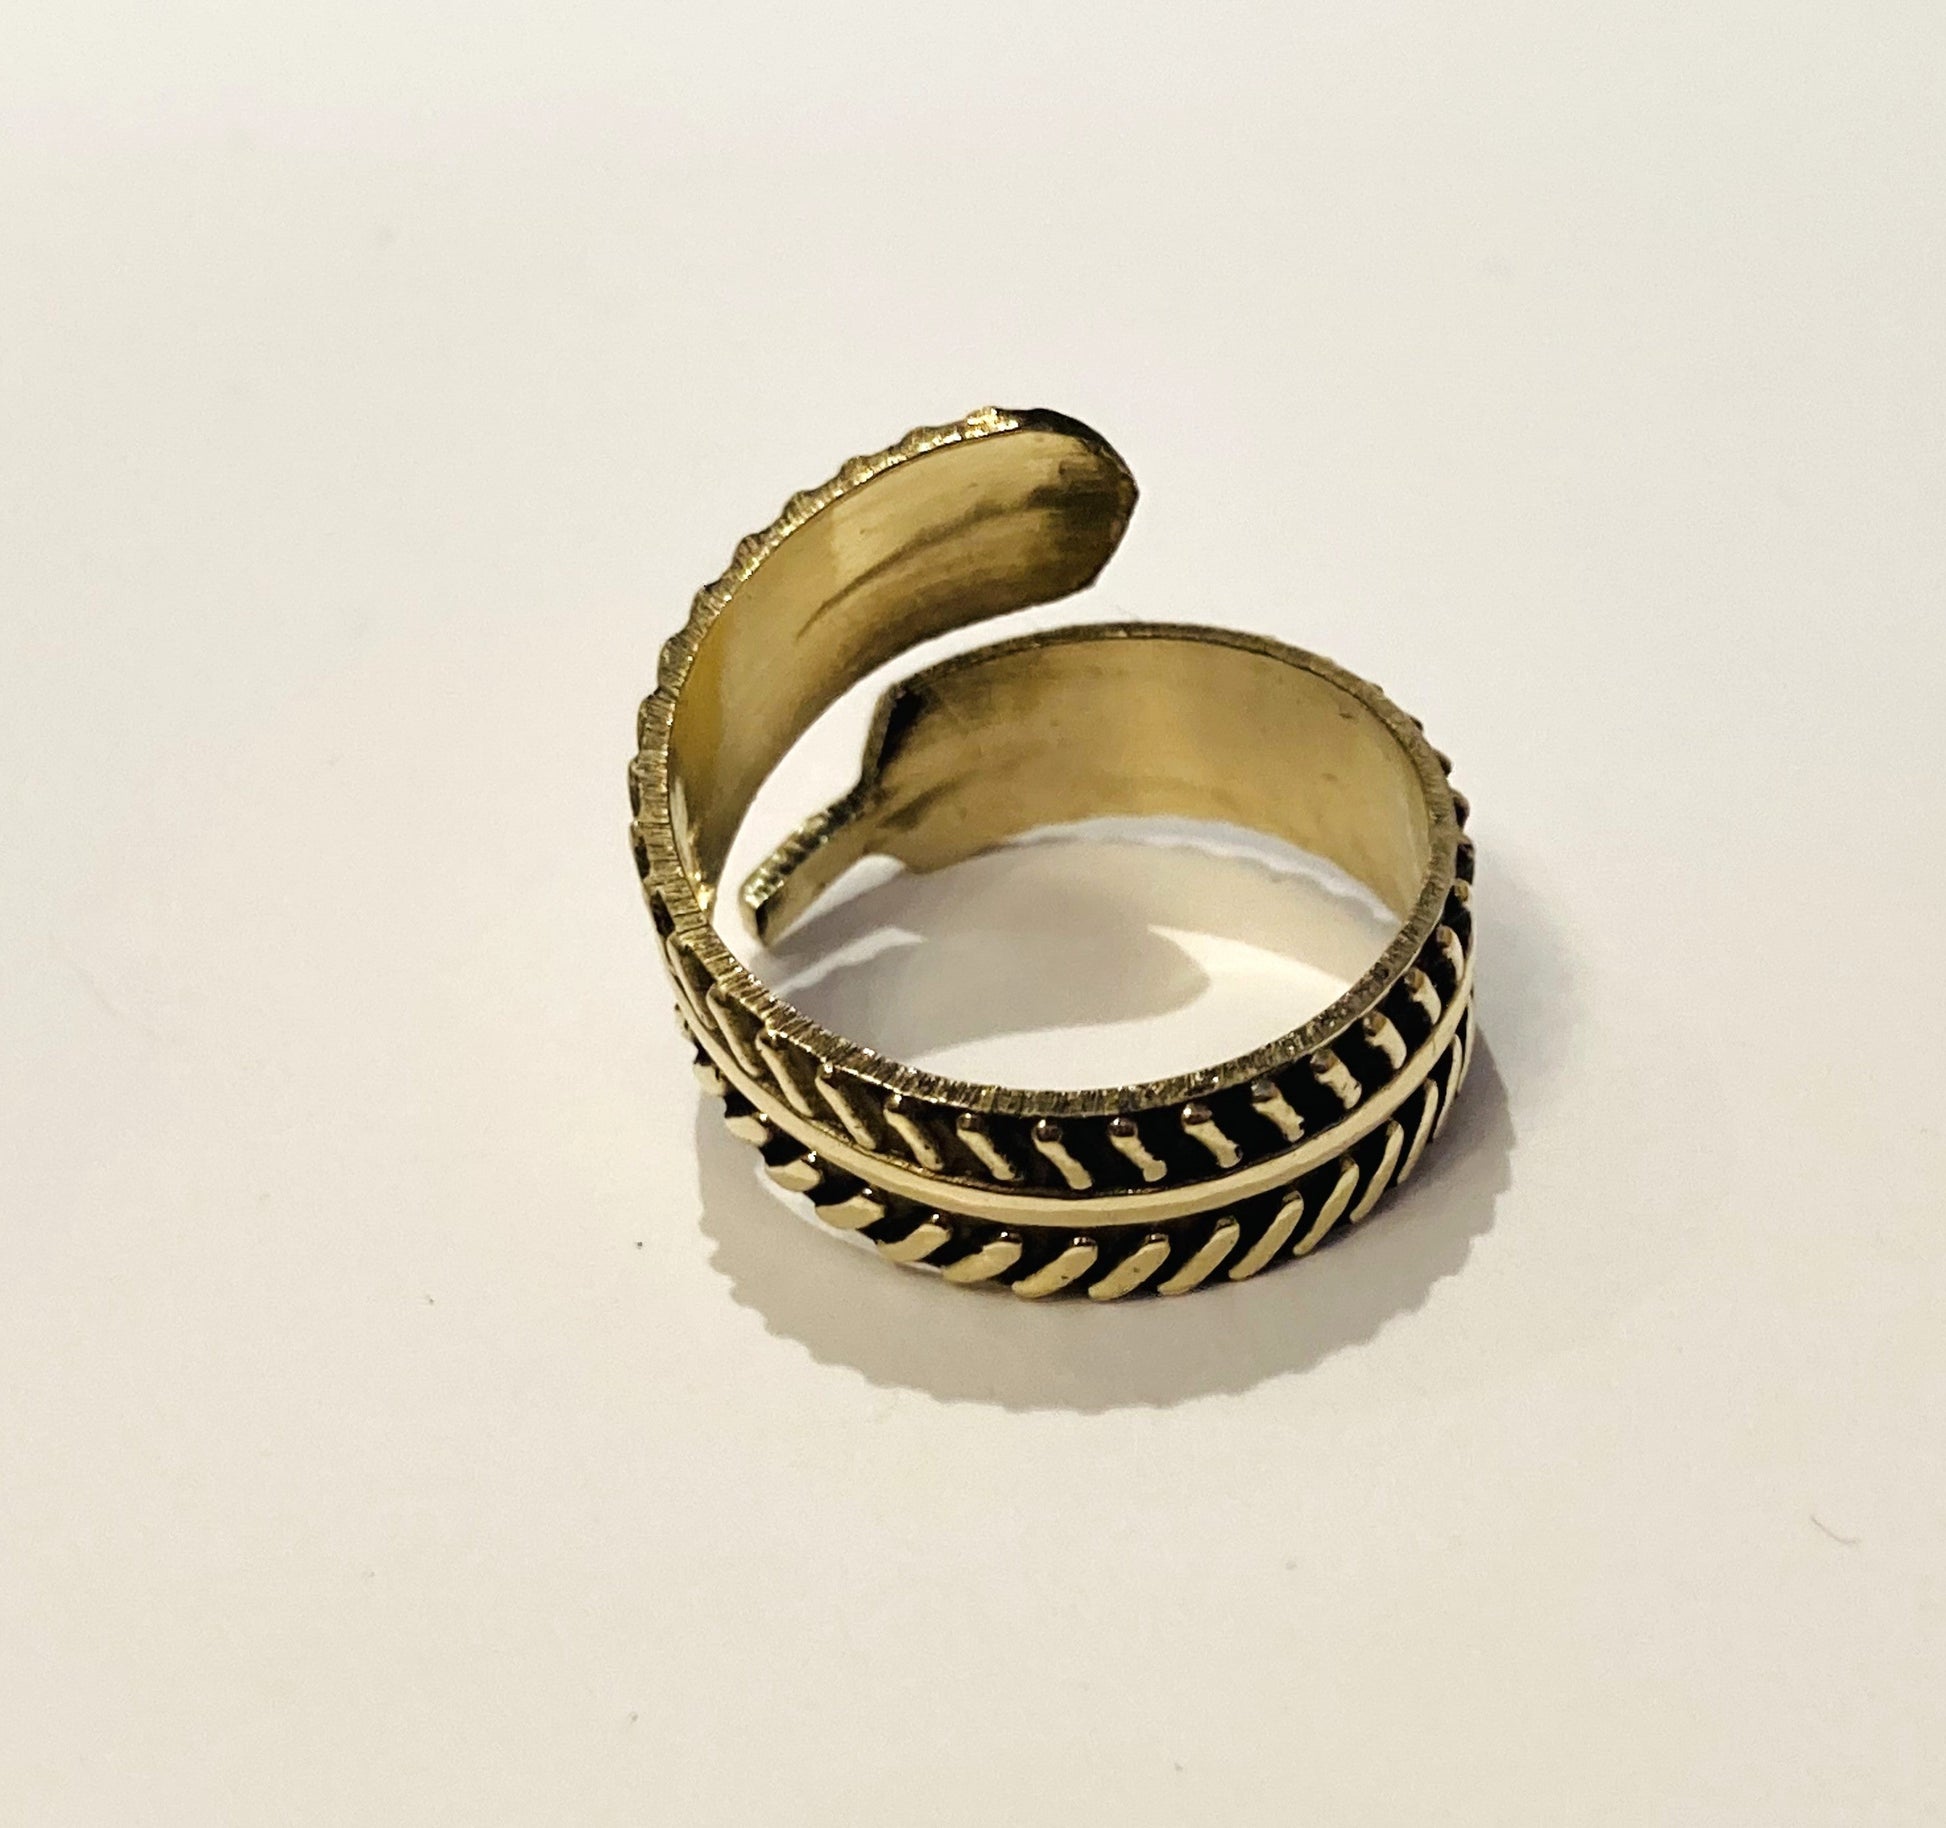 Handmade Brass Ring - Leaves